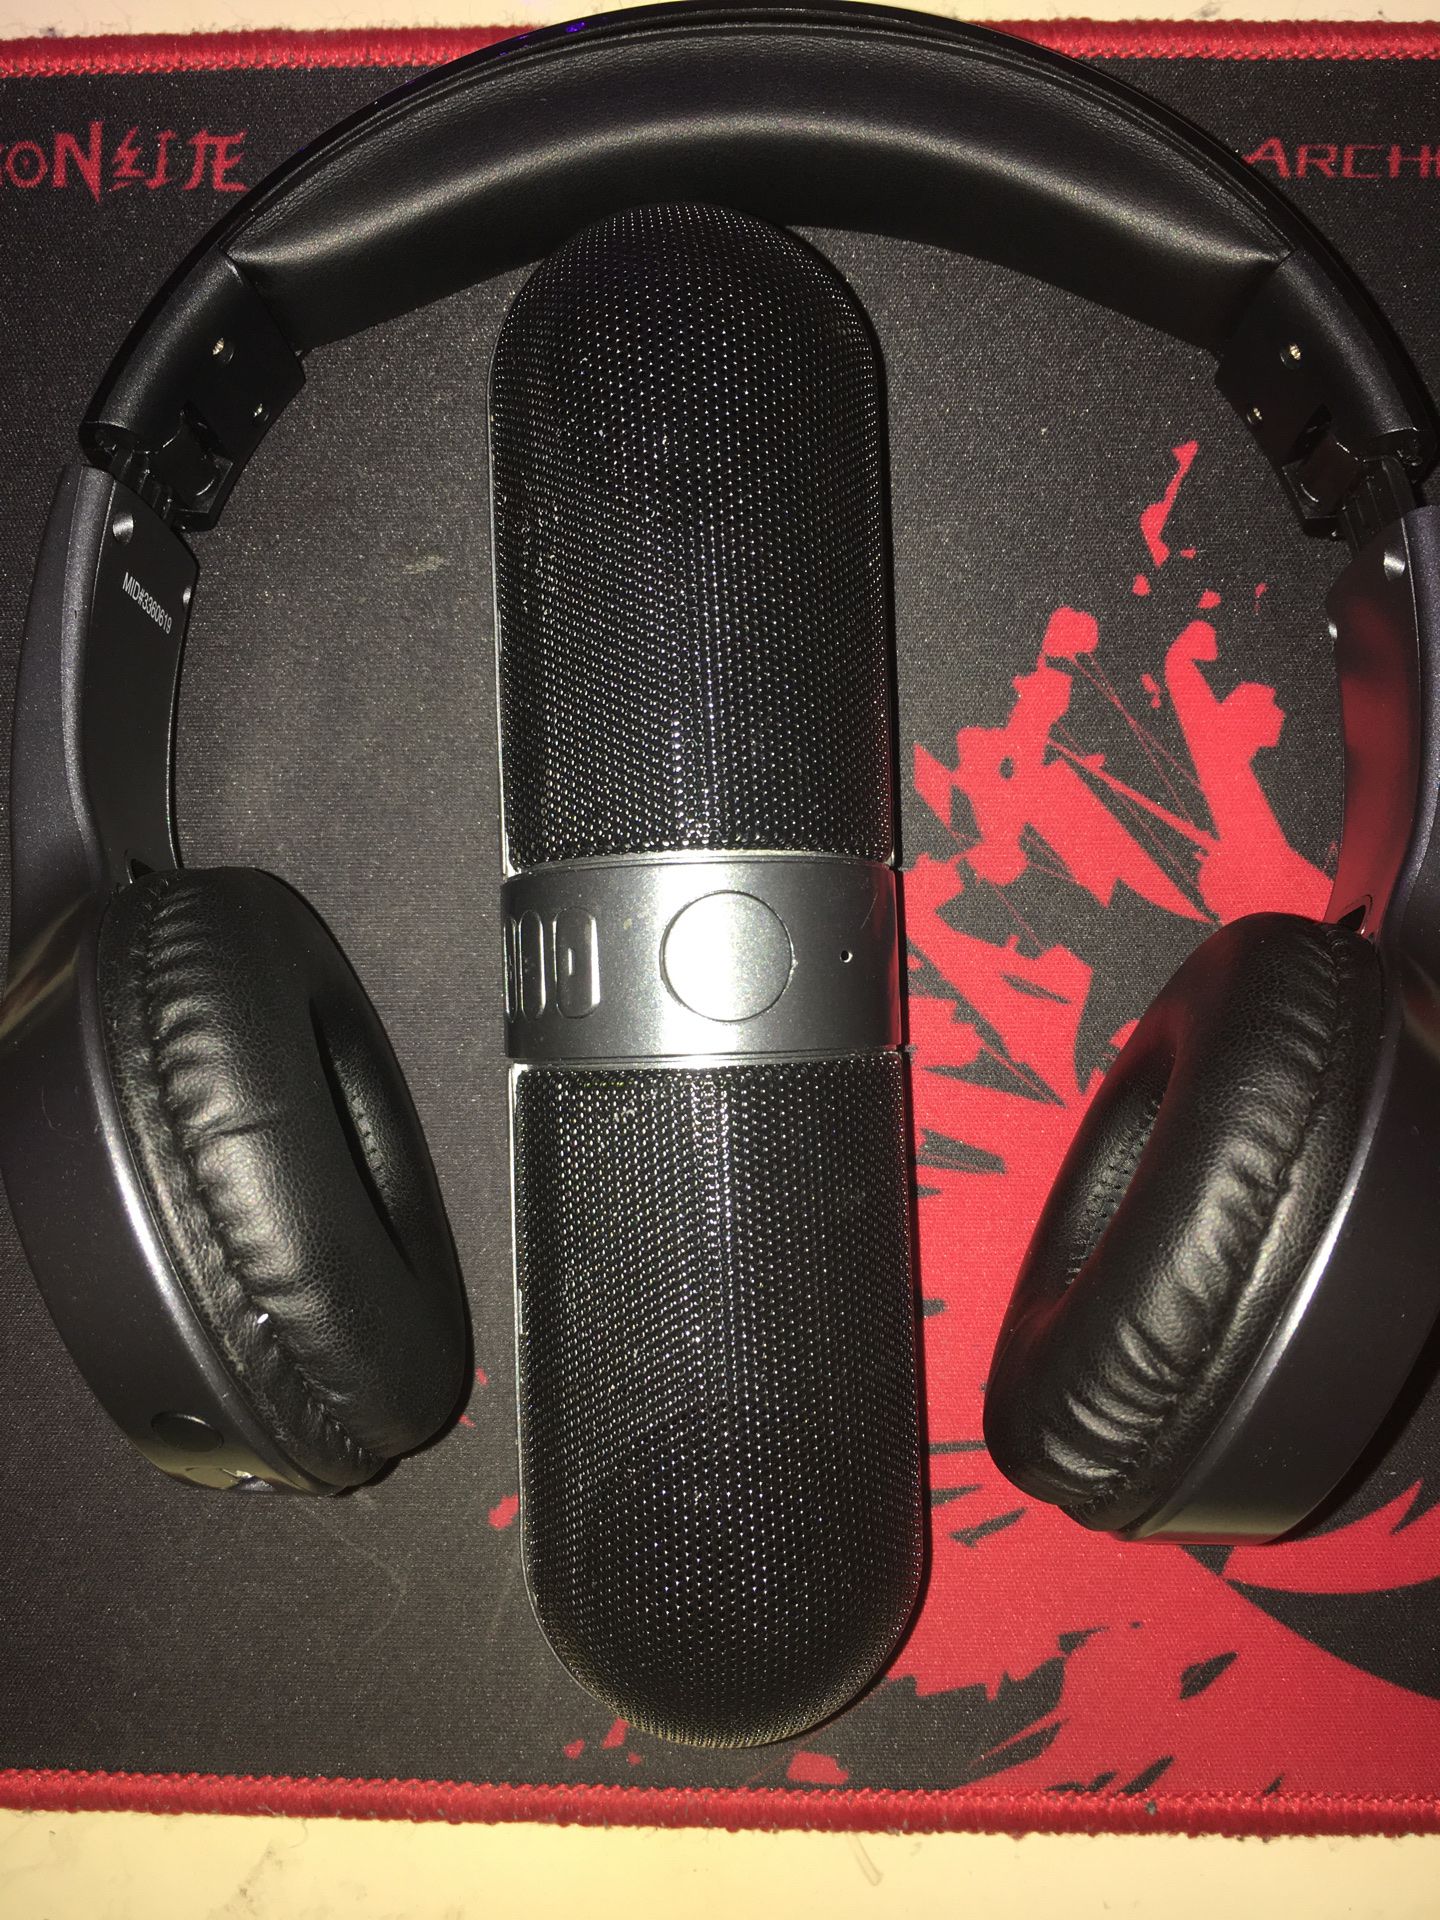 Bluetooth speaker + headphones